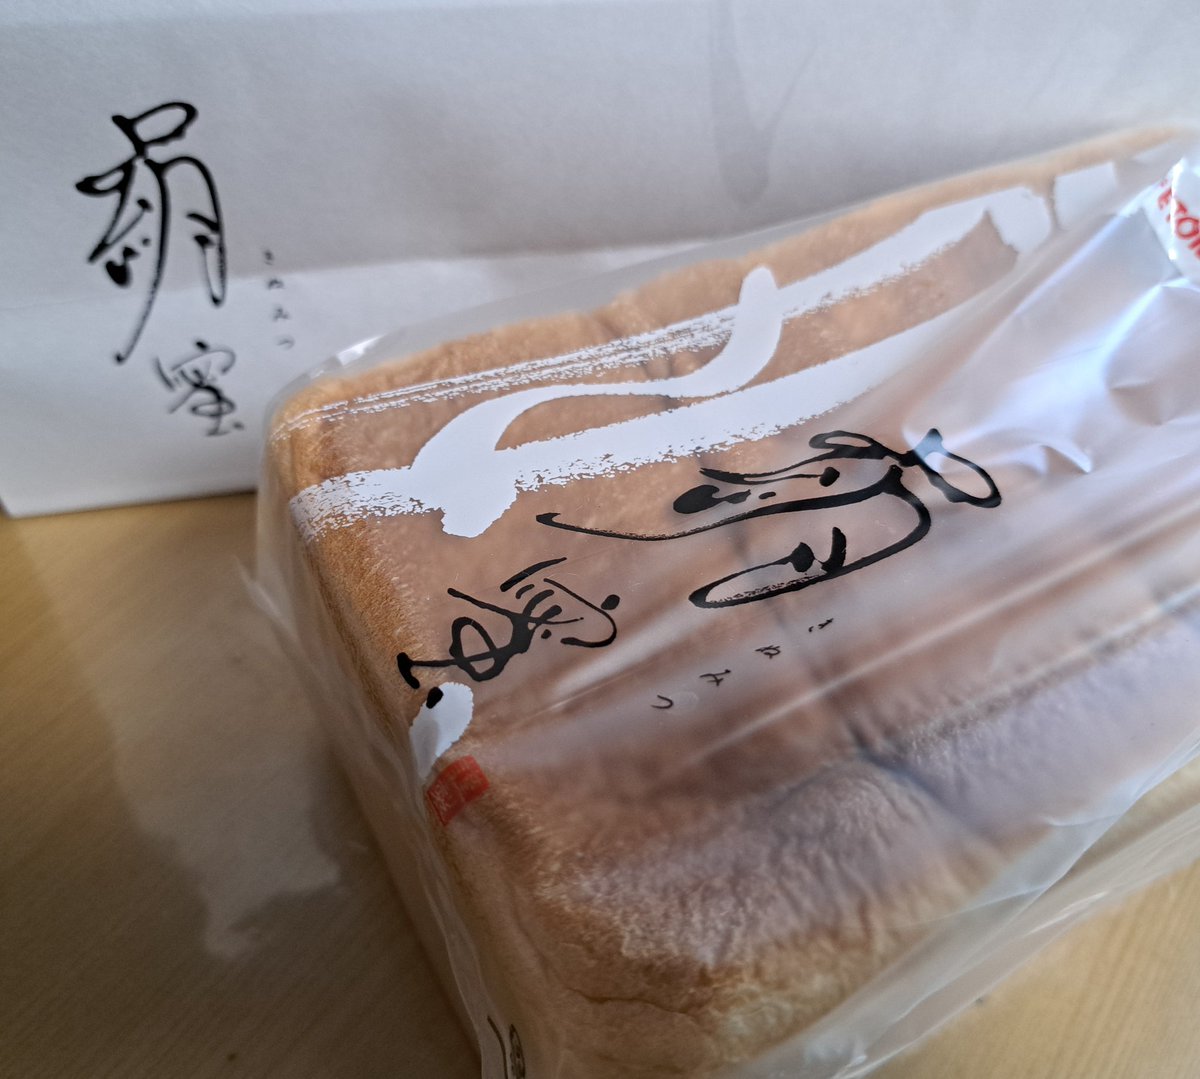 粉もんベスト１❗
新東名浜松サービスエリアのパン屋さんで買える食パンが美味しいんです😋🍴💕
４歳娘が耳まで残さず食べる食パンです❗
絹蜜オススメです！
#グッティ